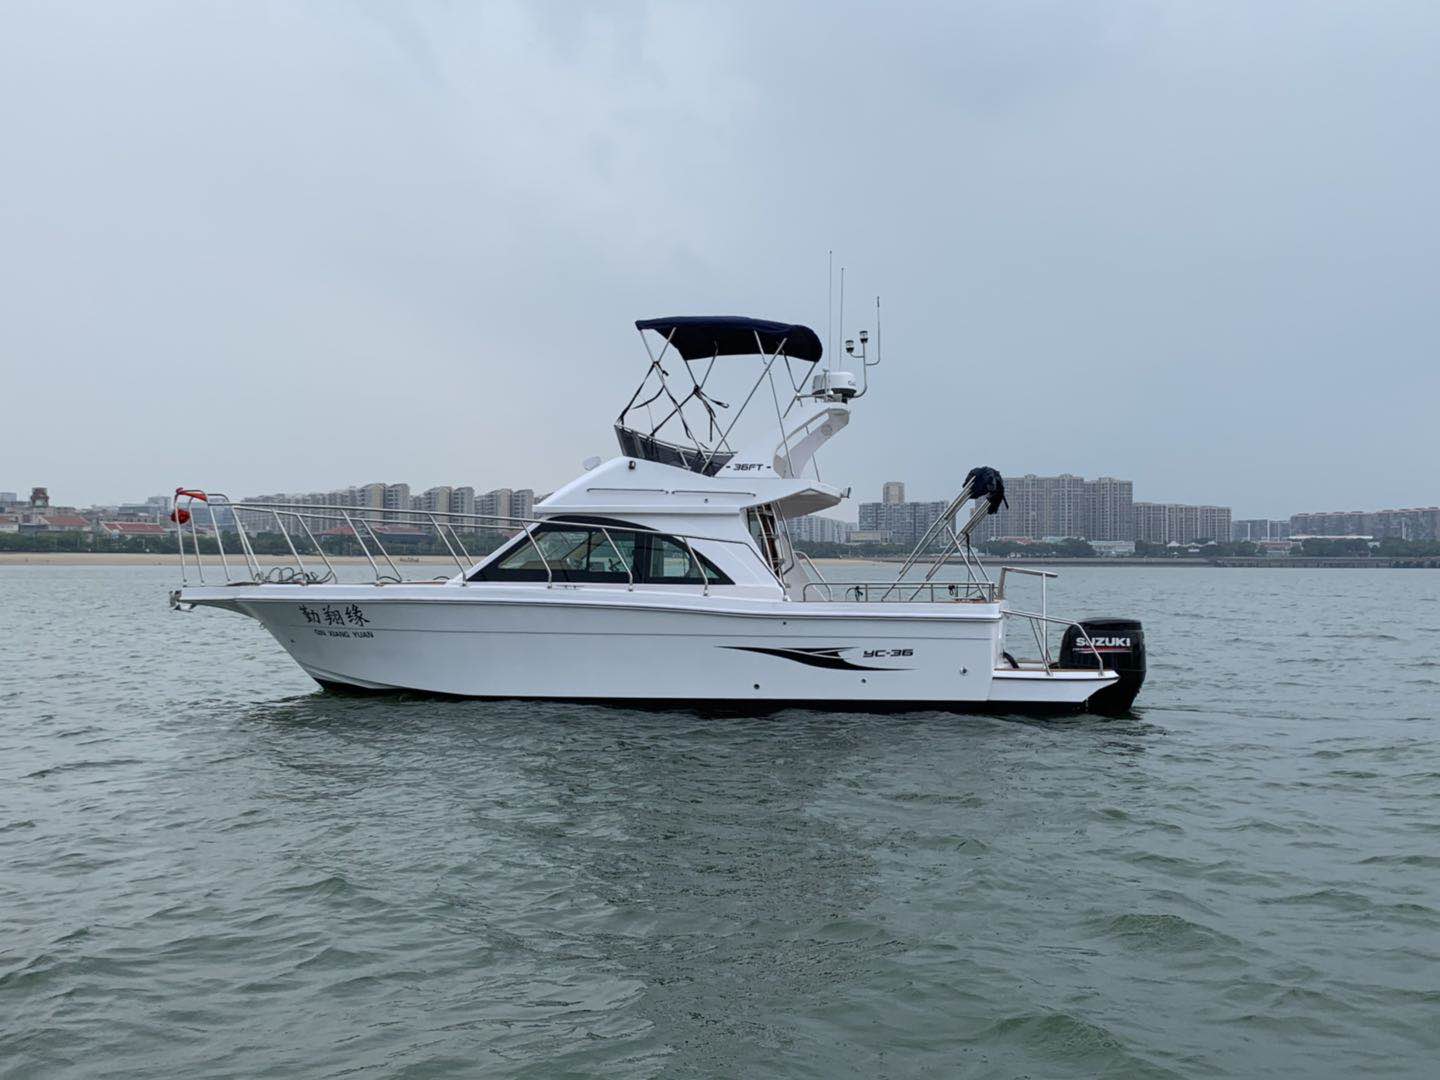 Grandsea 36ft Fiberglass Flybridge Cruiser Sport Fishing Boat for Sale